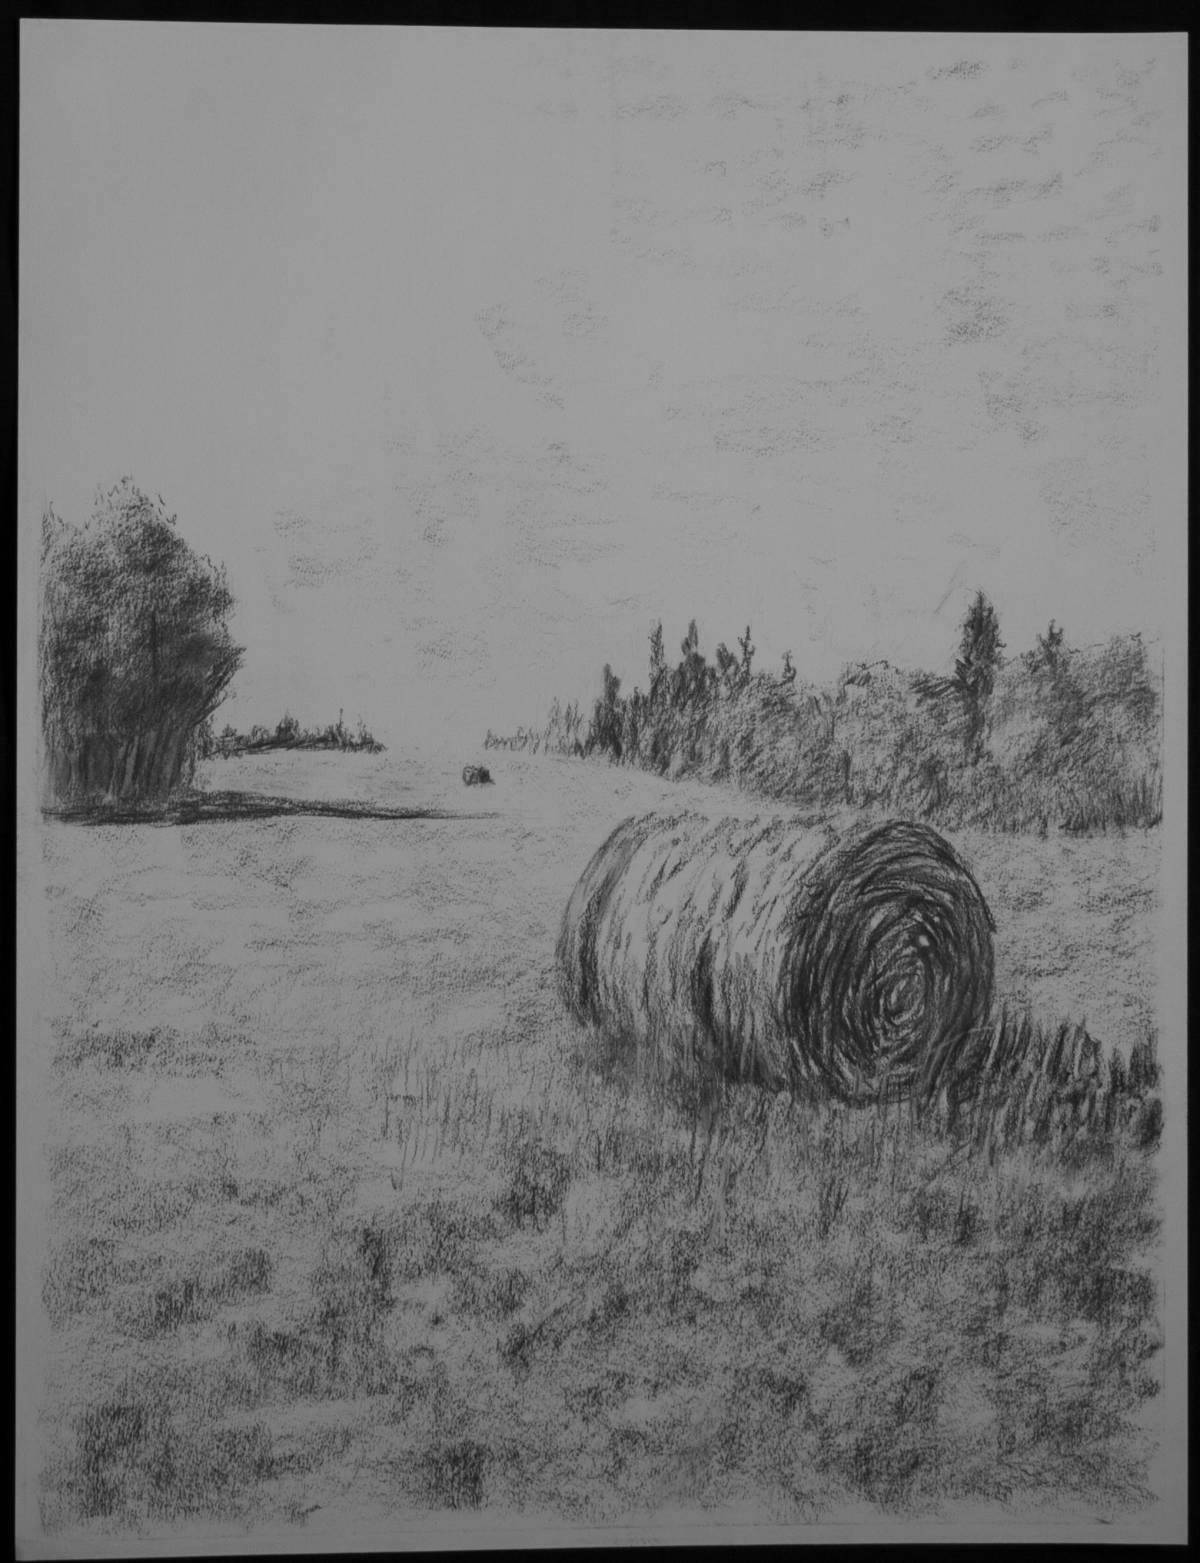 Green haystack